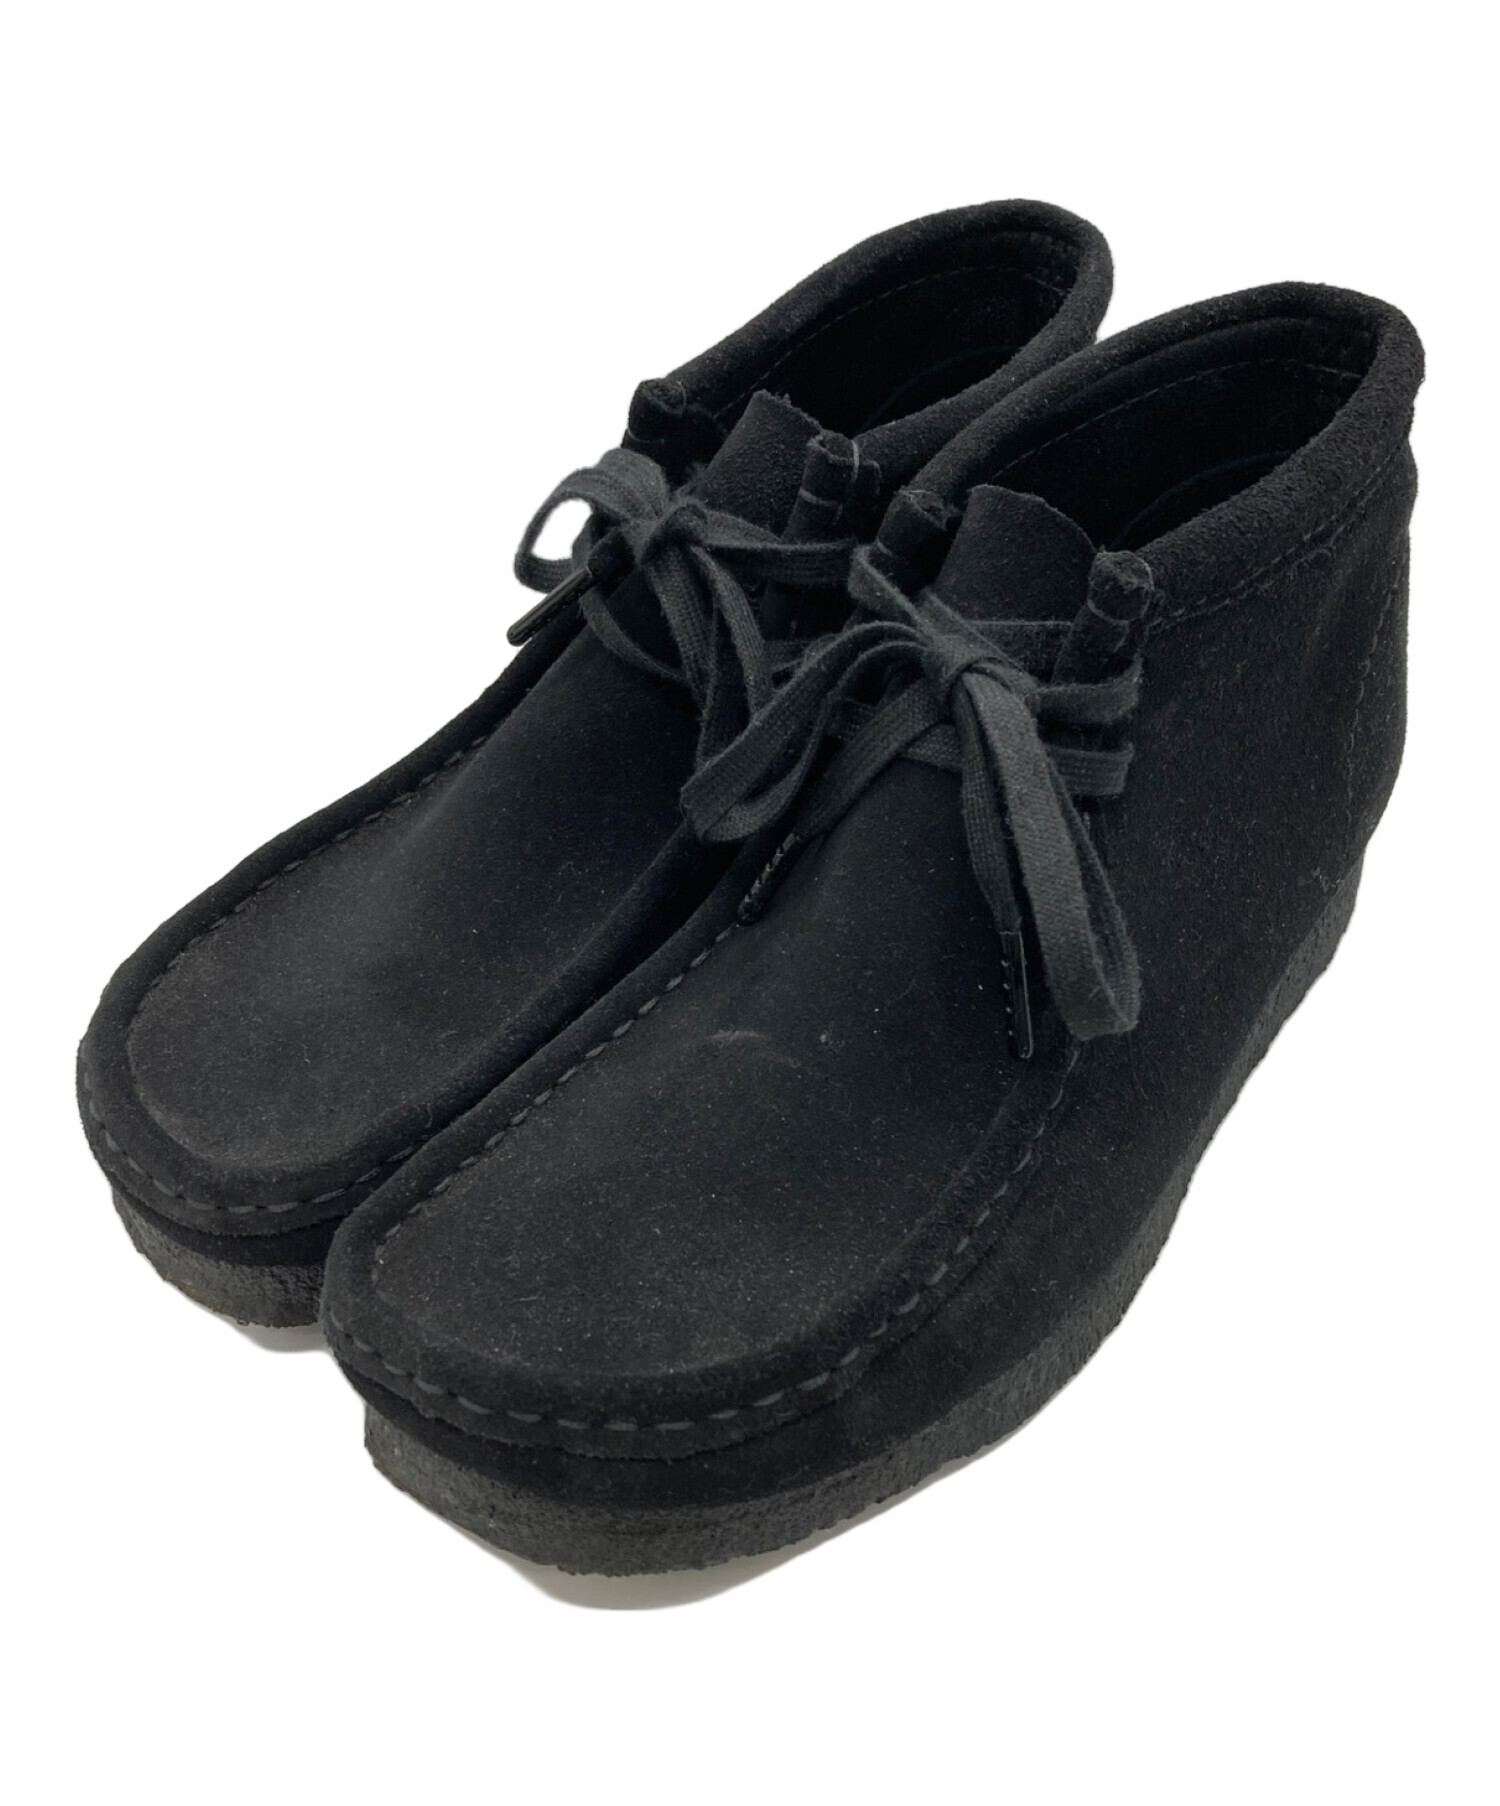 【オーダー】clarks original ワラビー 26 ブラックスエード 靴